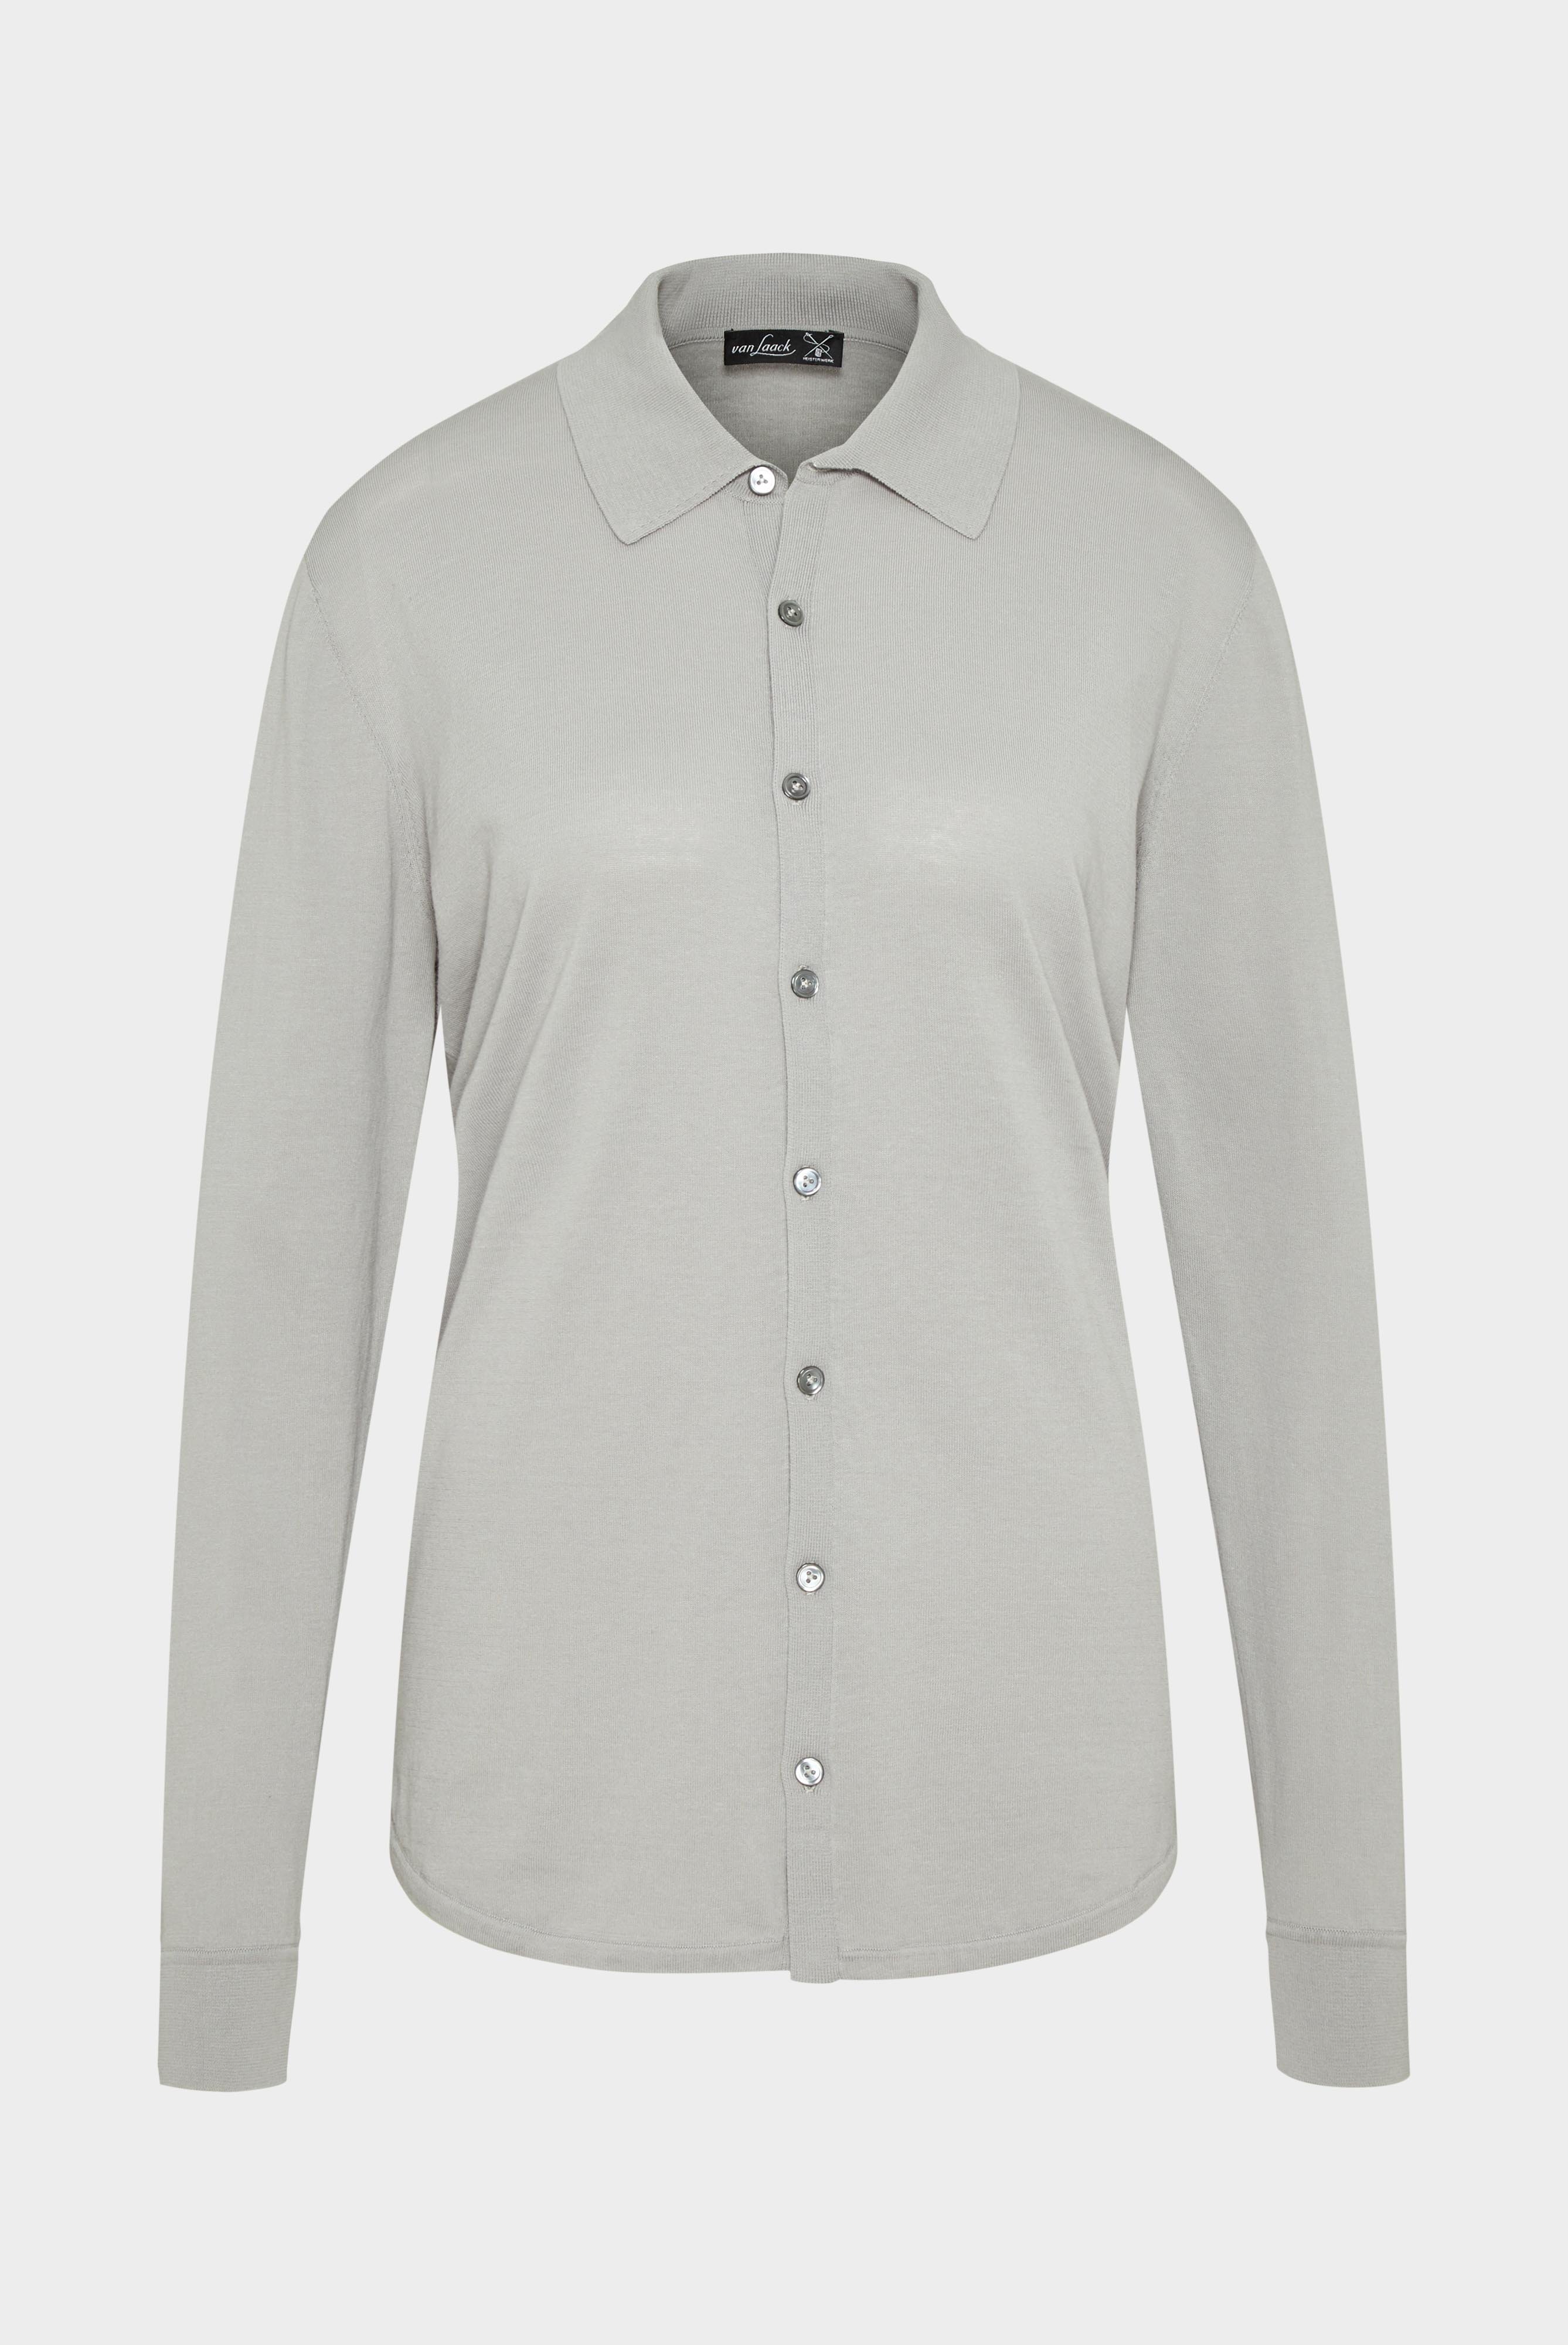 Bügelleichte Hemden+Strick Hemd aus Air Cotton+82.8611..S00174.050.L